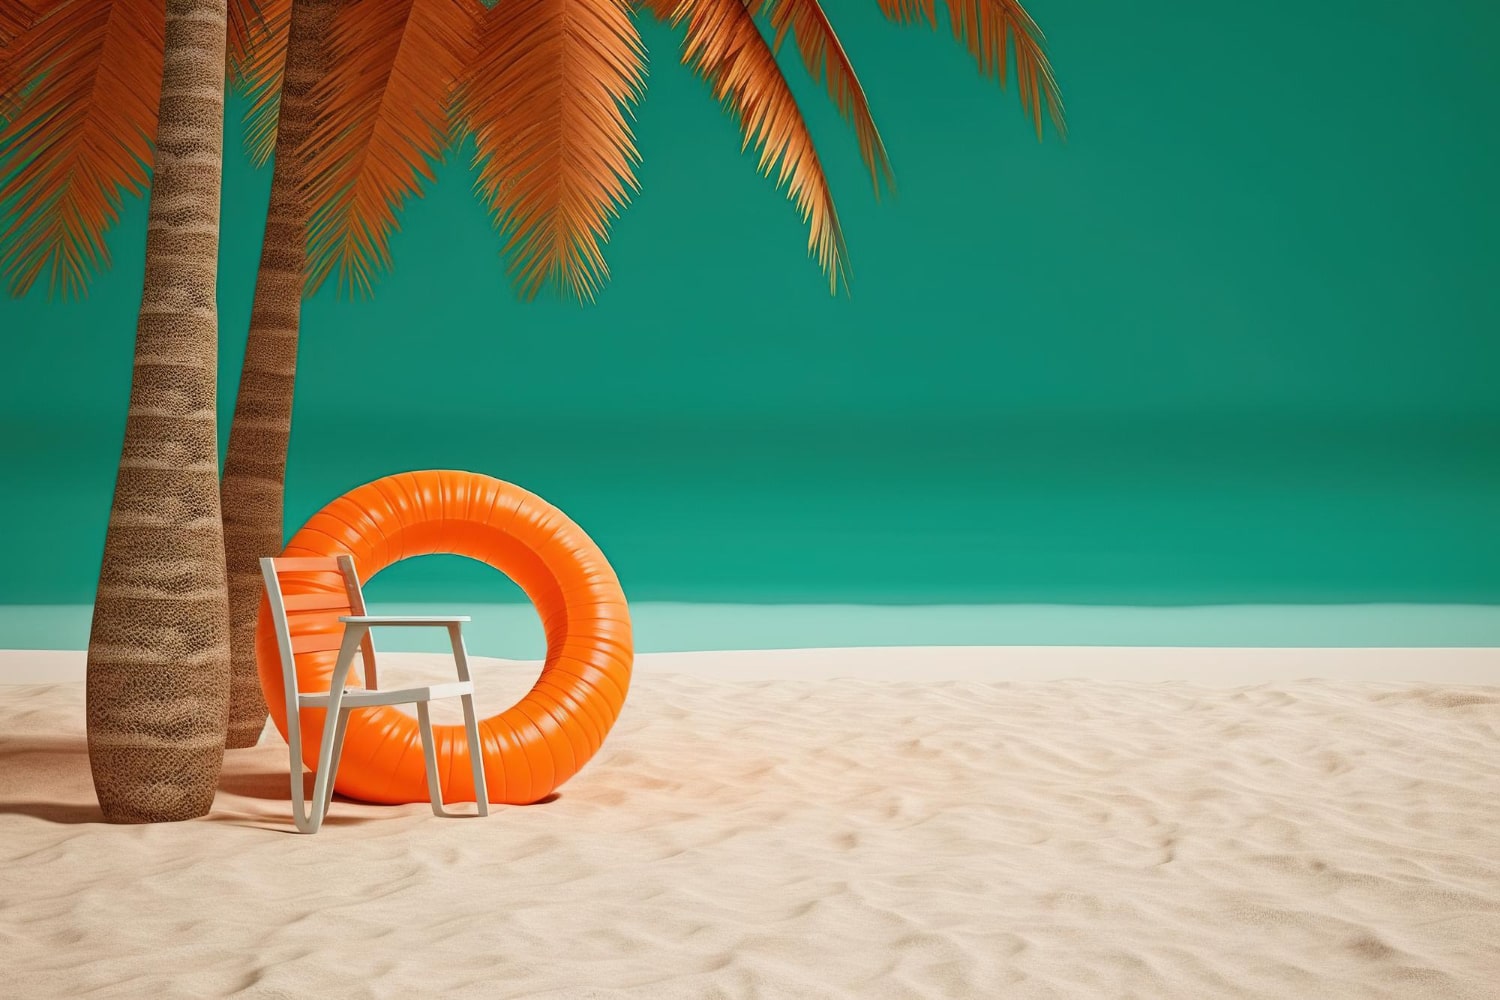 Dwie palmy na plaży przy których stoi krzesło i koło kąpielowe. W oddali widać morze. 